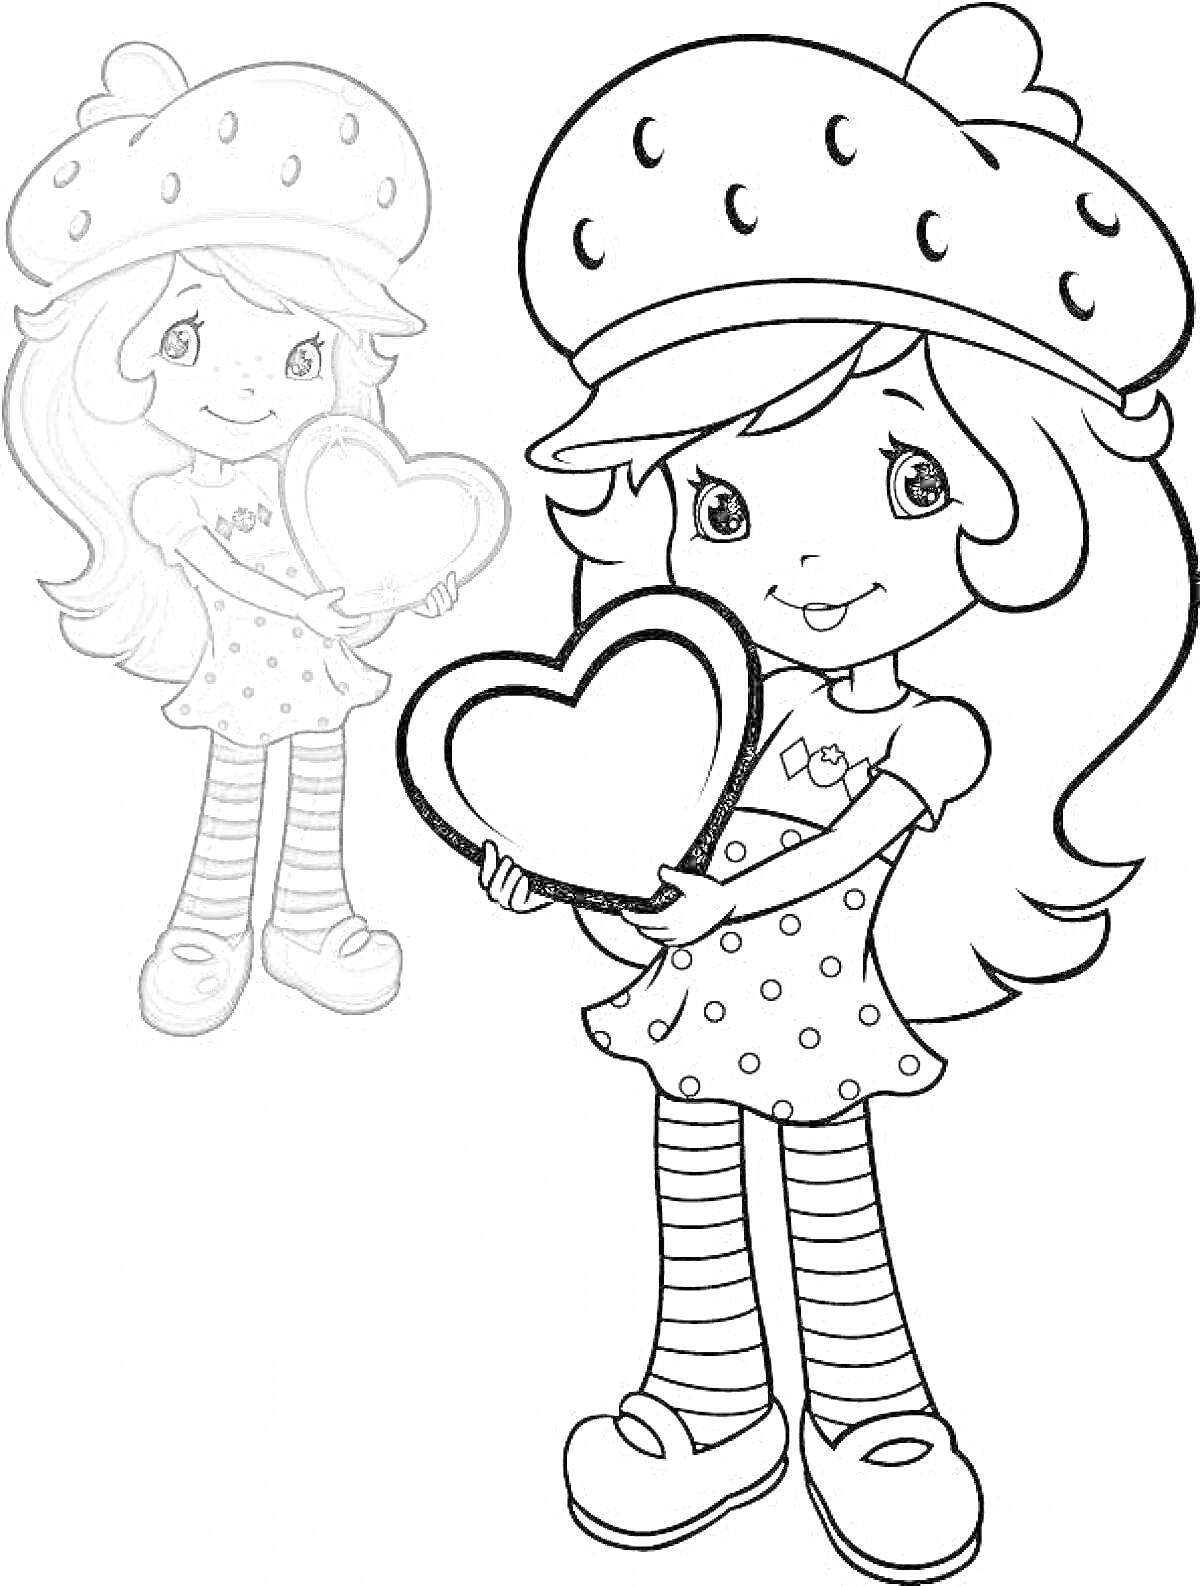 Девочка с длинными волосами, в шапке с клубничным рисунком, платье в горошек и полосатых чулках, с сердцем в руках.